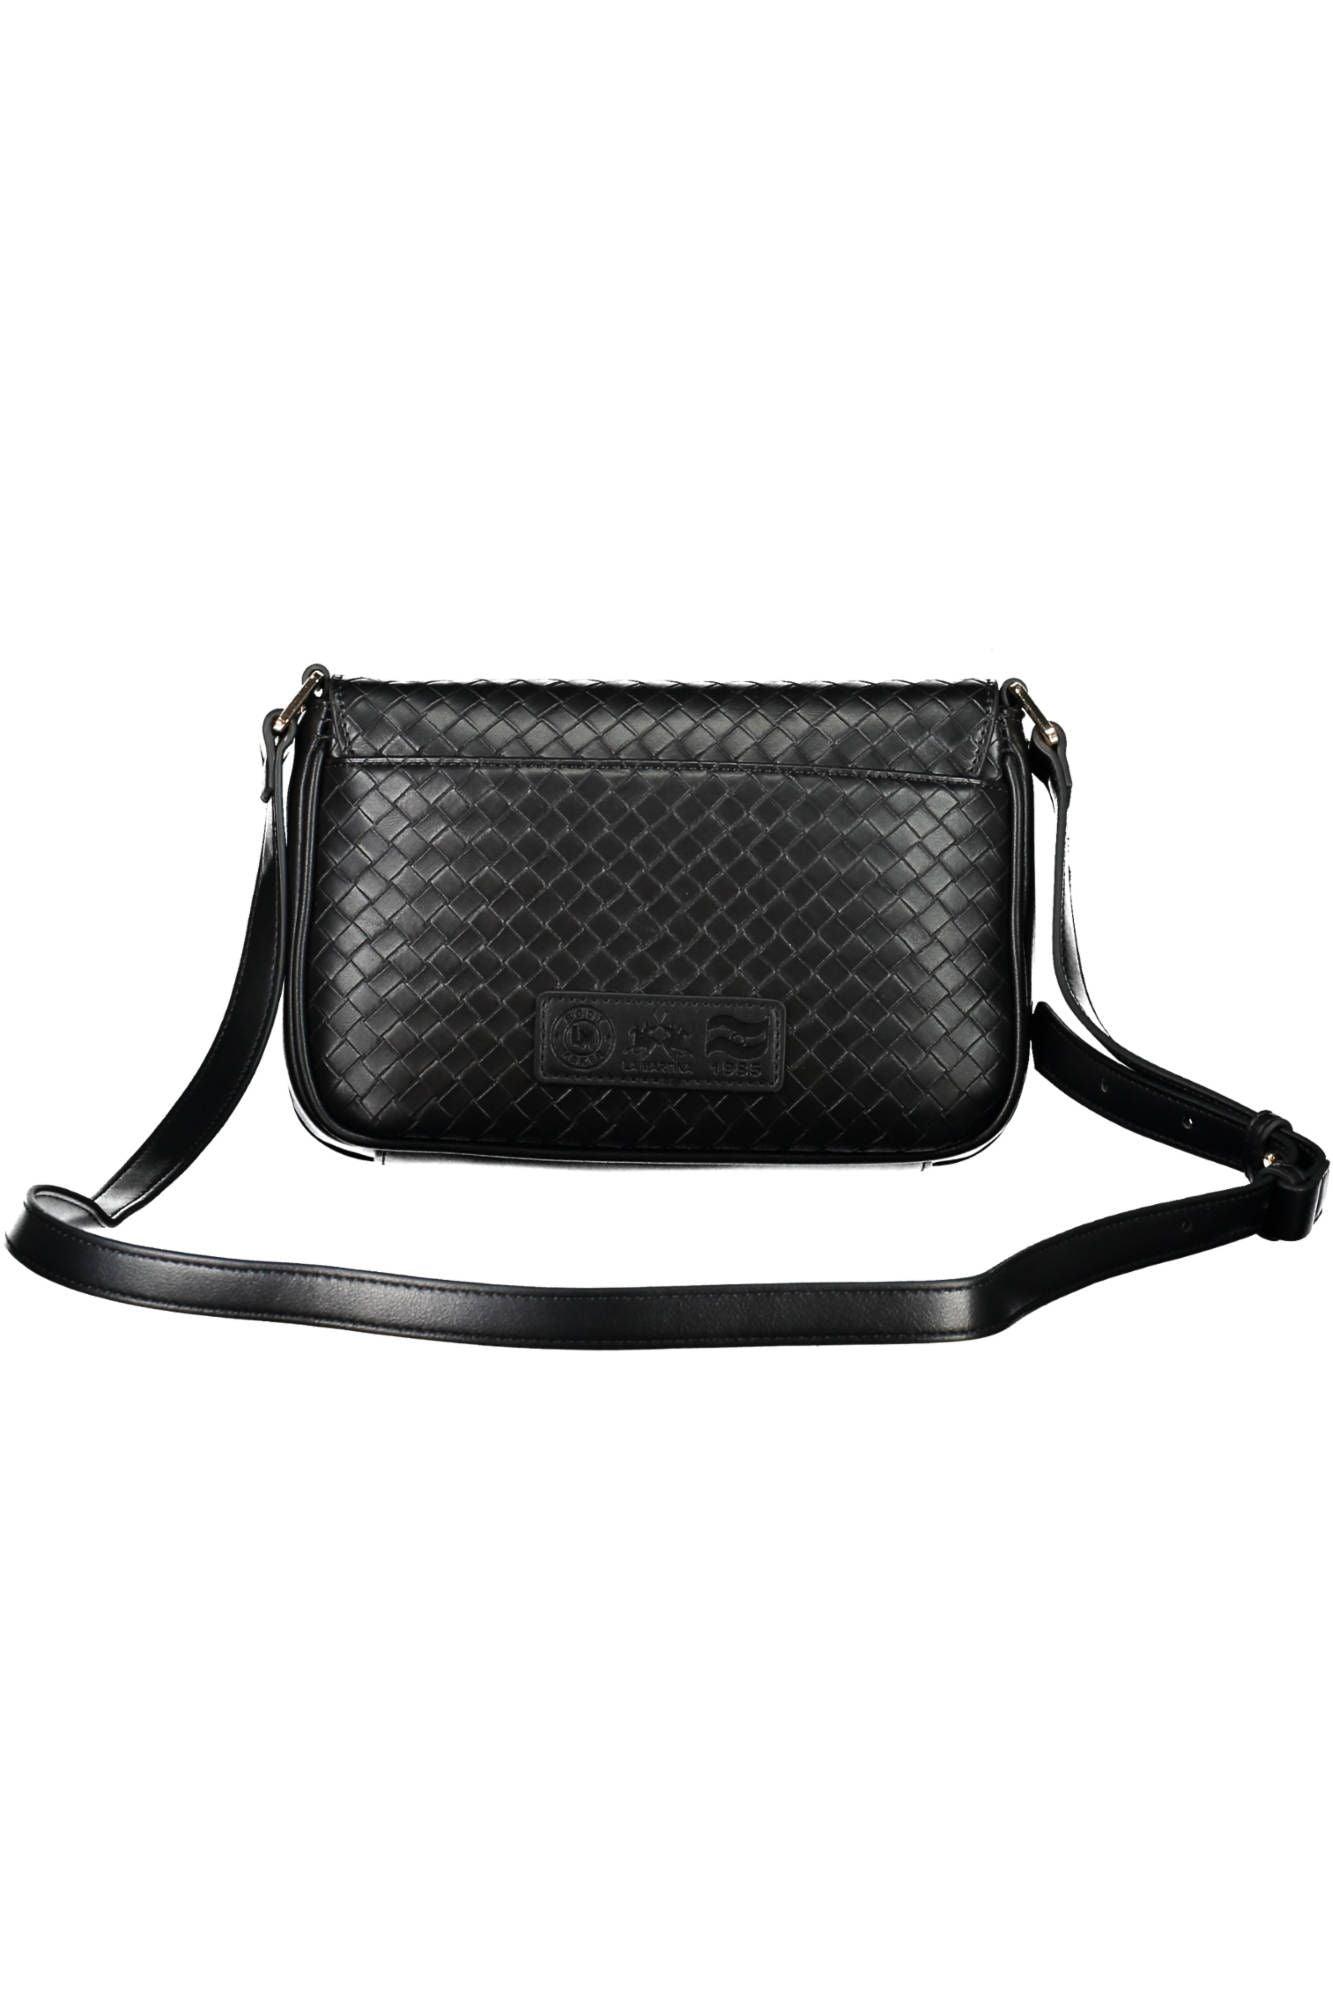 La Martina Elegant Black Shoulder Bag with Contrasting Details - PER.FASHION